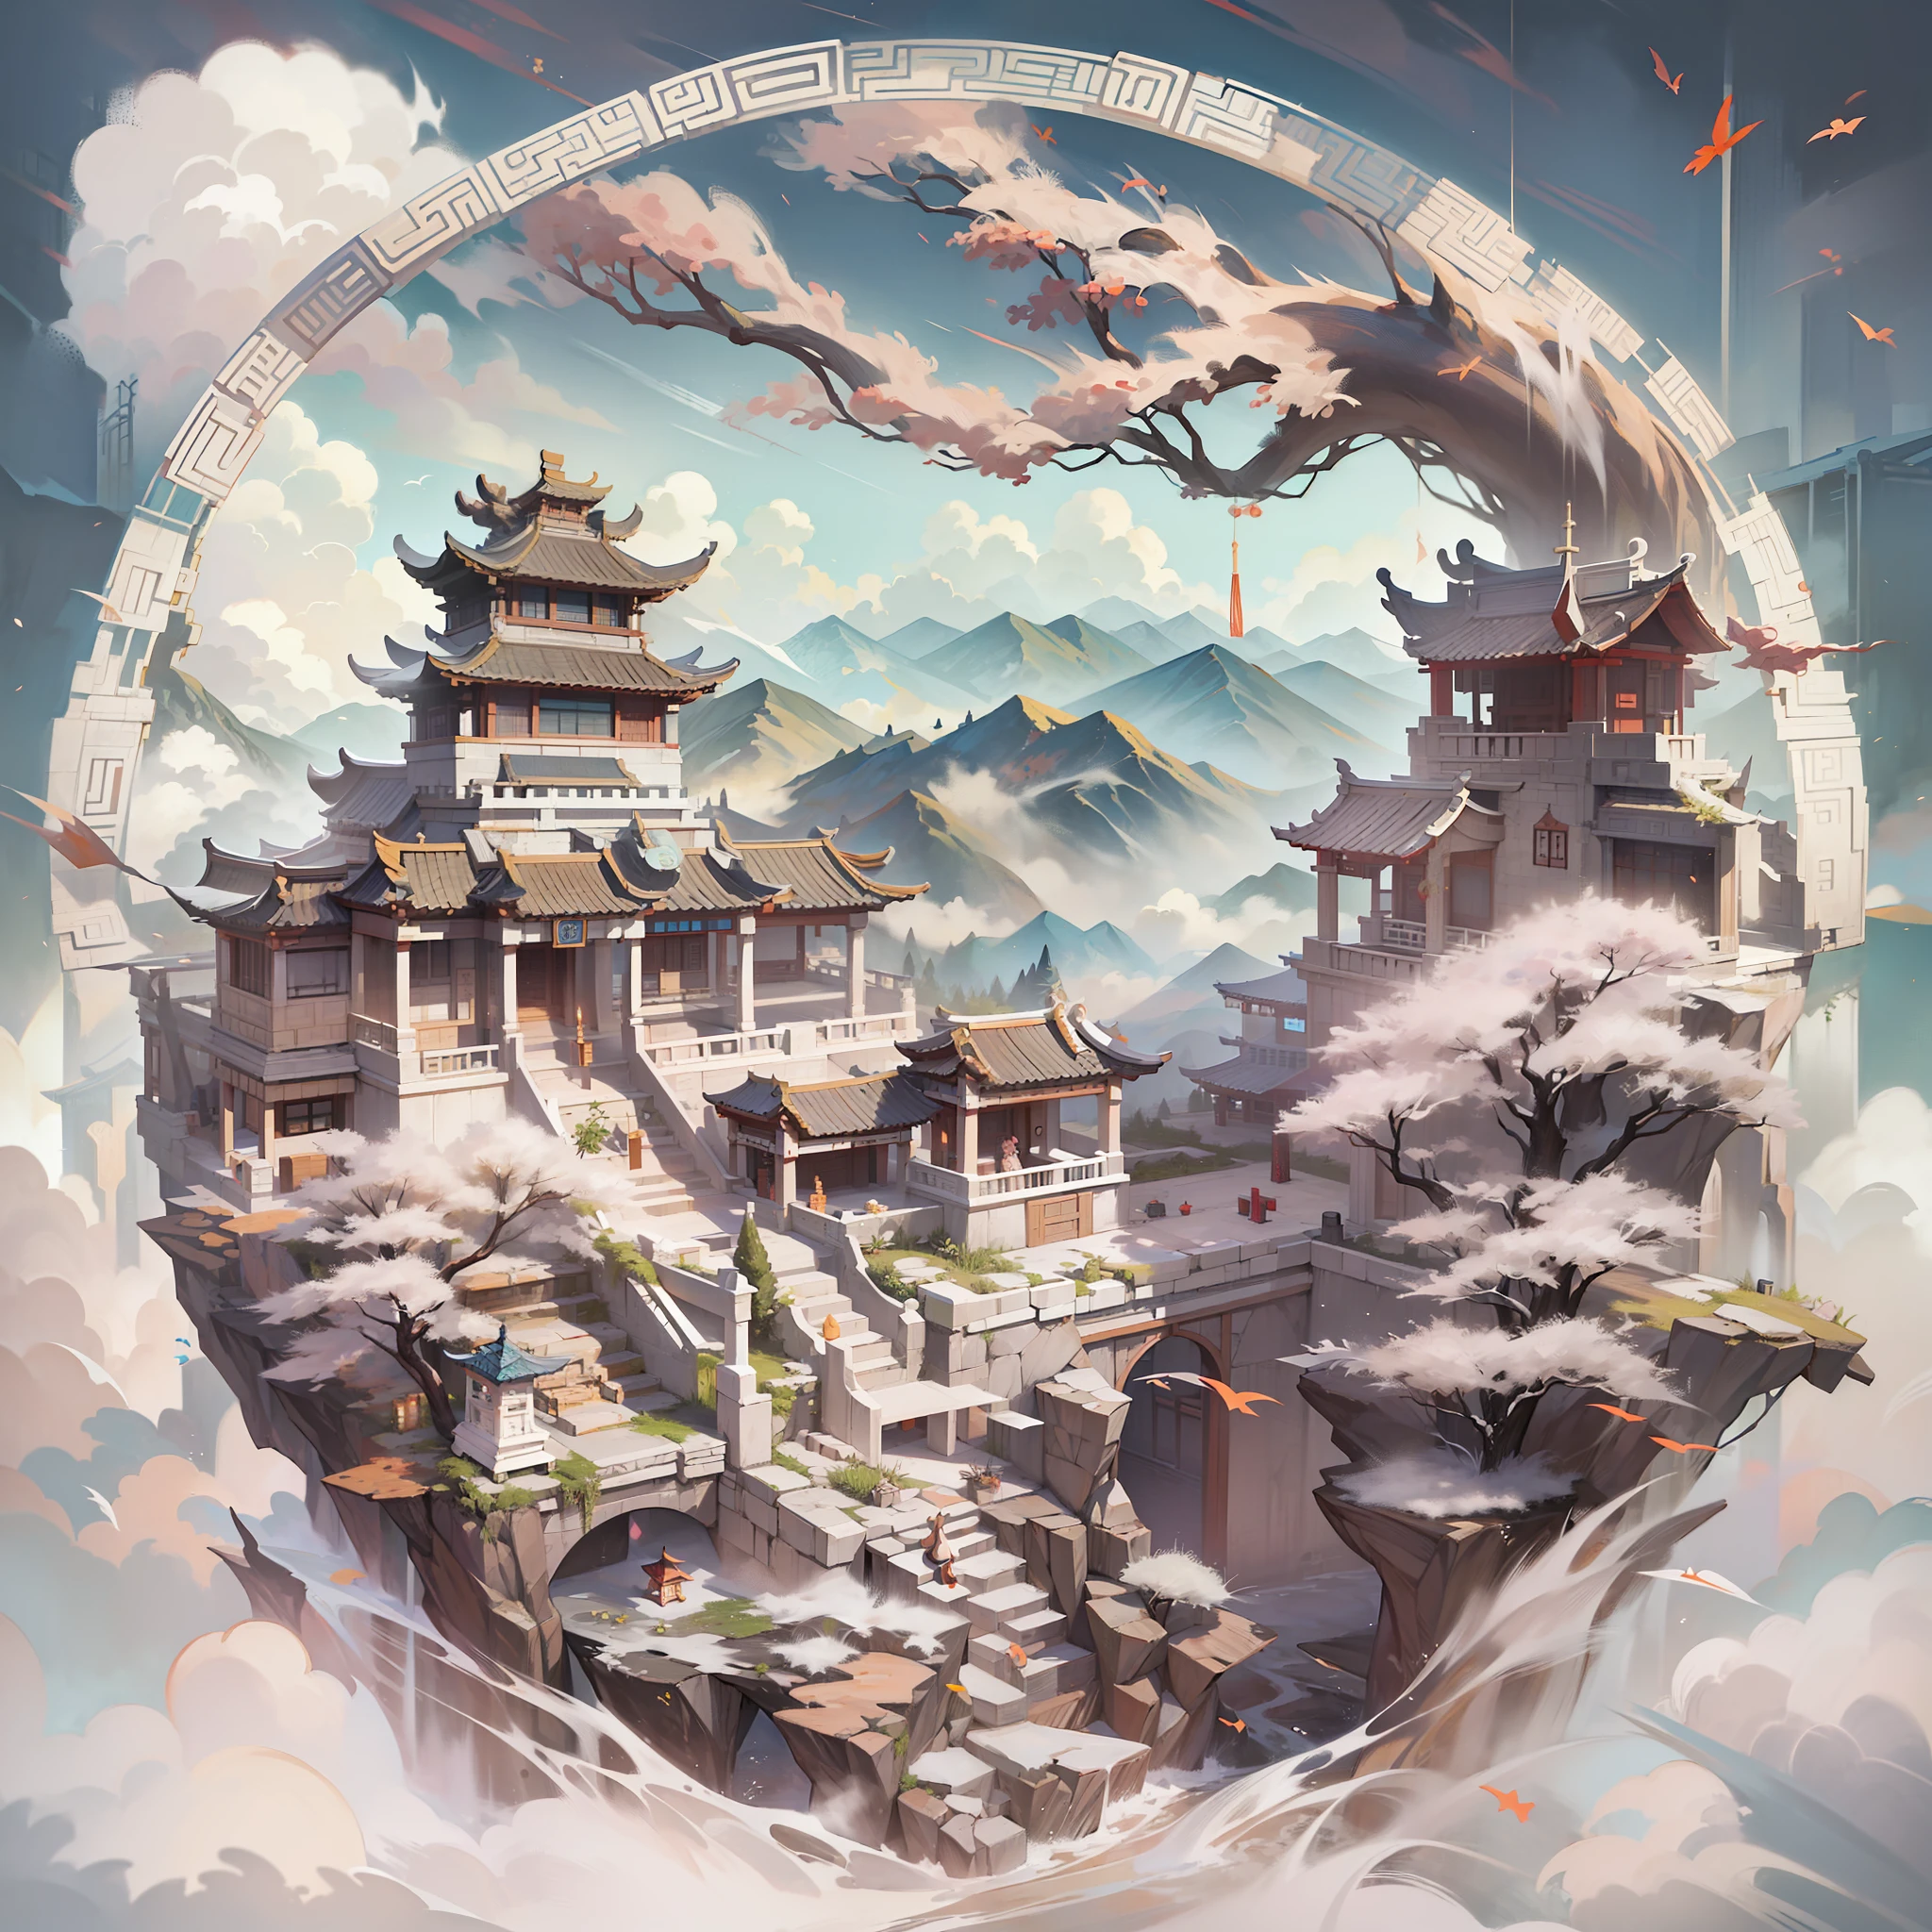 白云是各种古建筑的融合、巨大的白云、、白色中国古建筑、怀特山脉，白山路、白色石材、伟大的艺术品、幻想、神话、单色、武器,裂解,(魔法阵:1.1),xiuxian